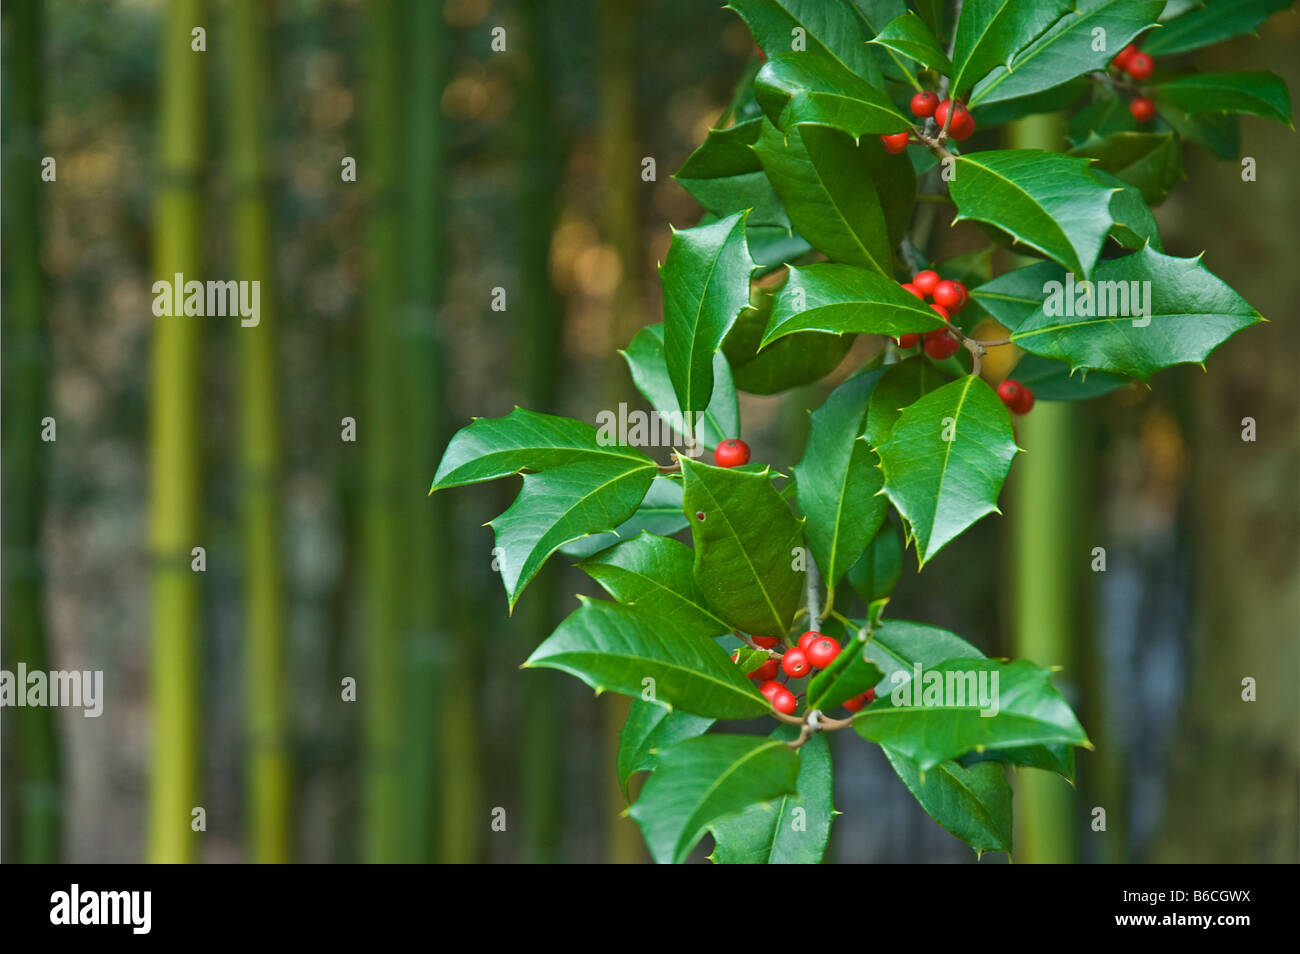 Close up Natale verde holly foglie e bacche rosse vicino a holly tree ilex sp. filiale all'aperto in inverno con spazio di copia Foto Stock